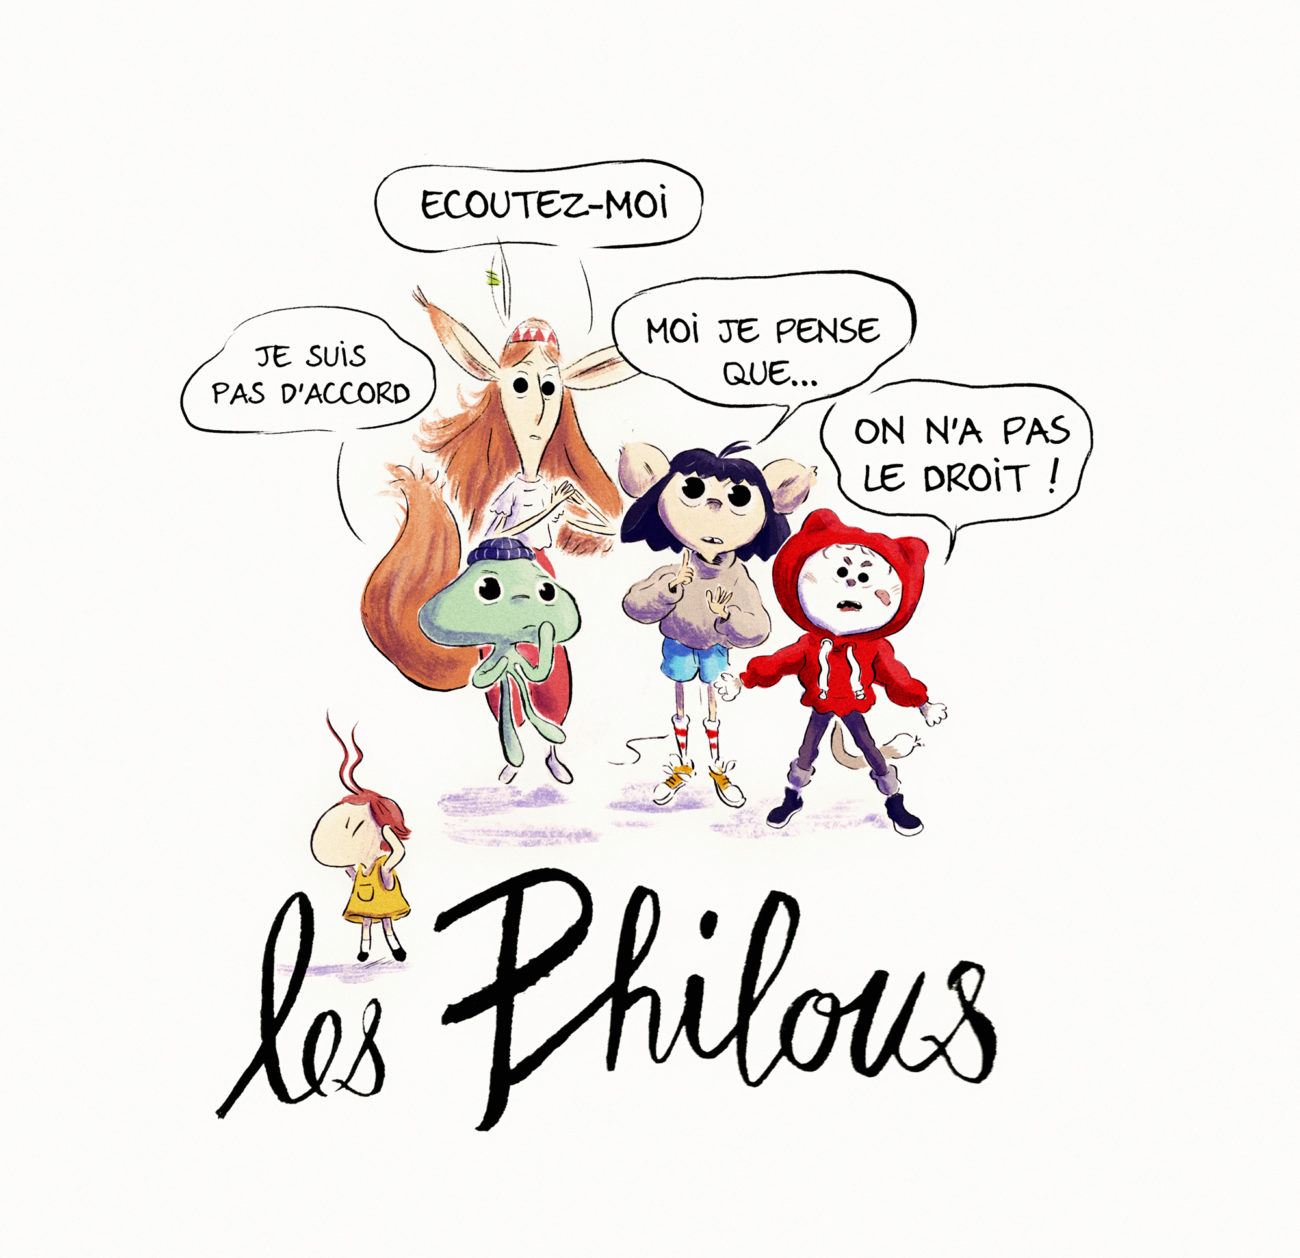 Les Philous